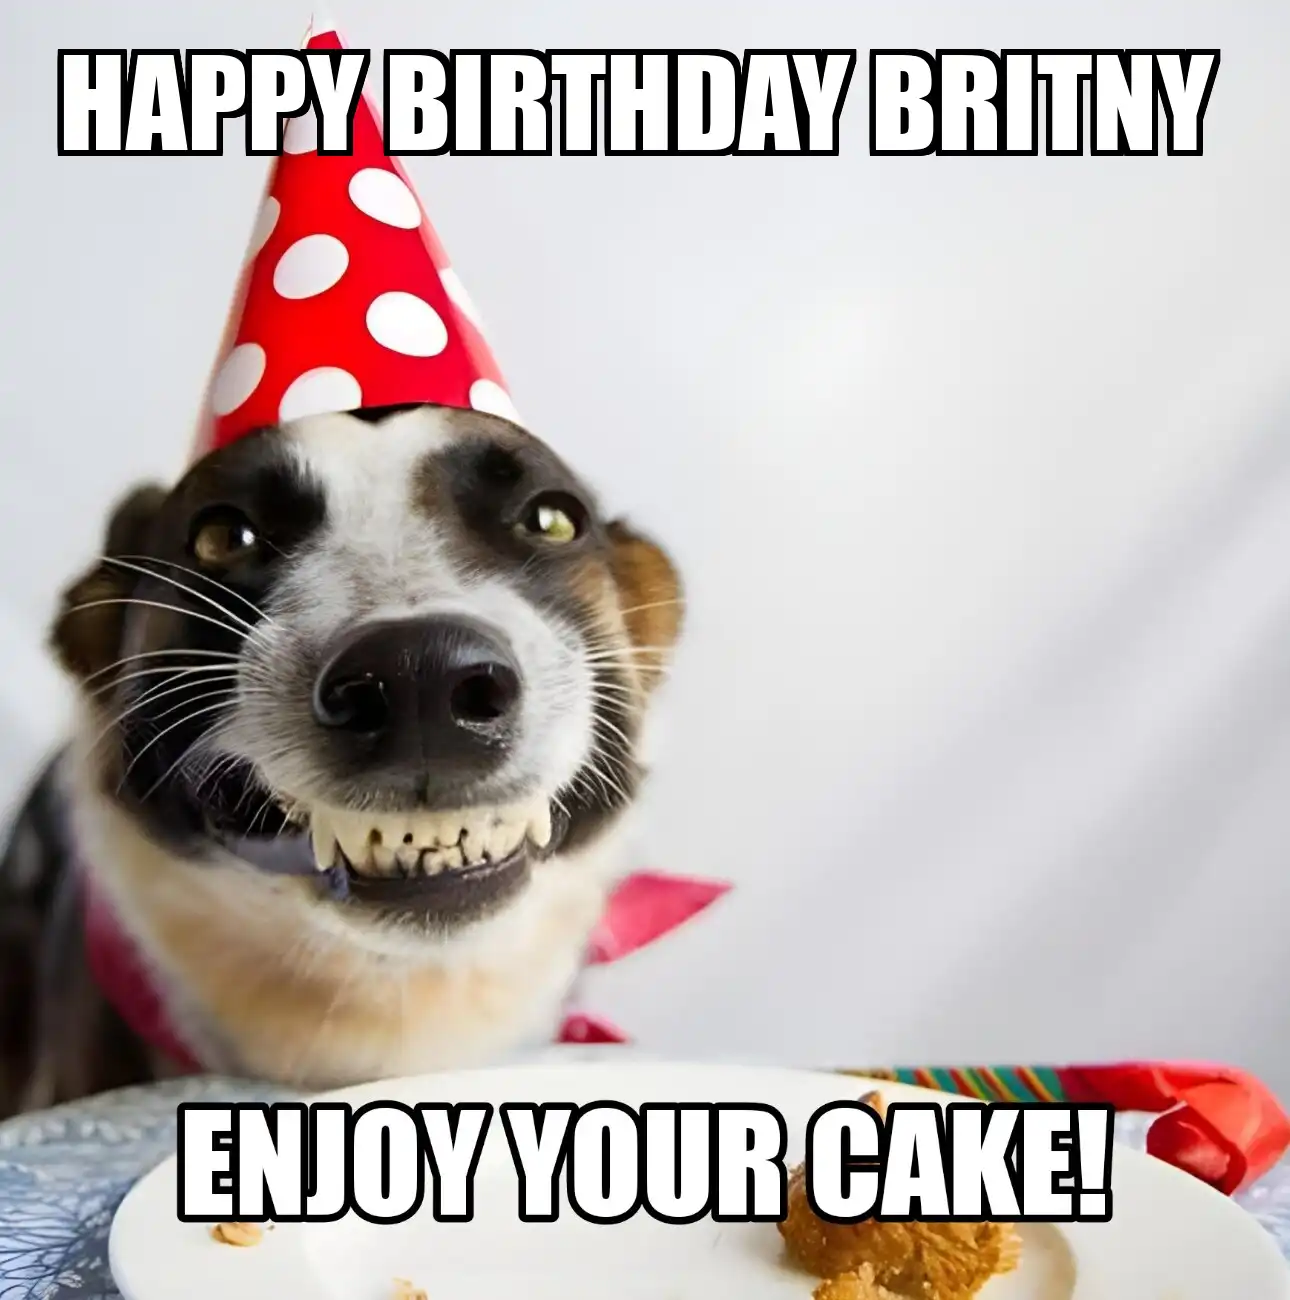 Happy Birthday Britny Enjoy Your Cake Dog Meme